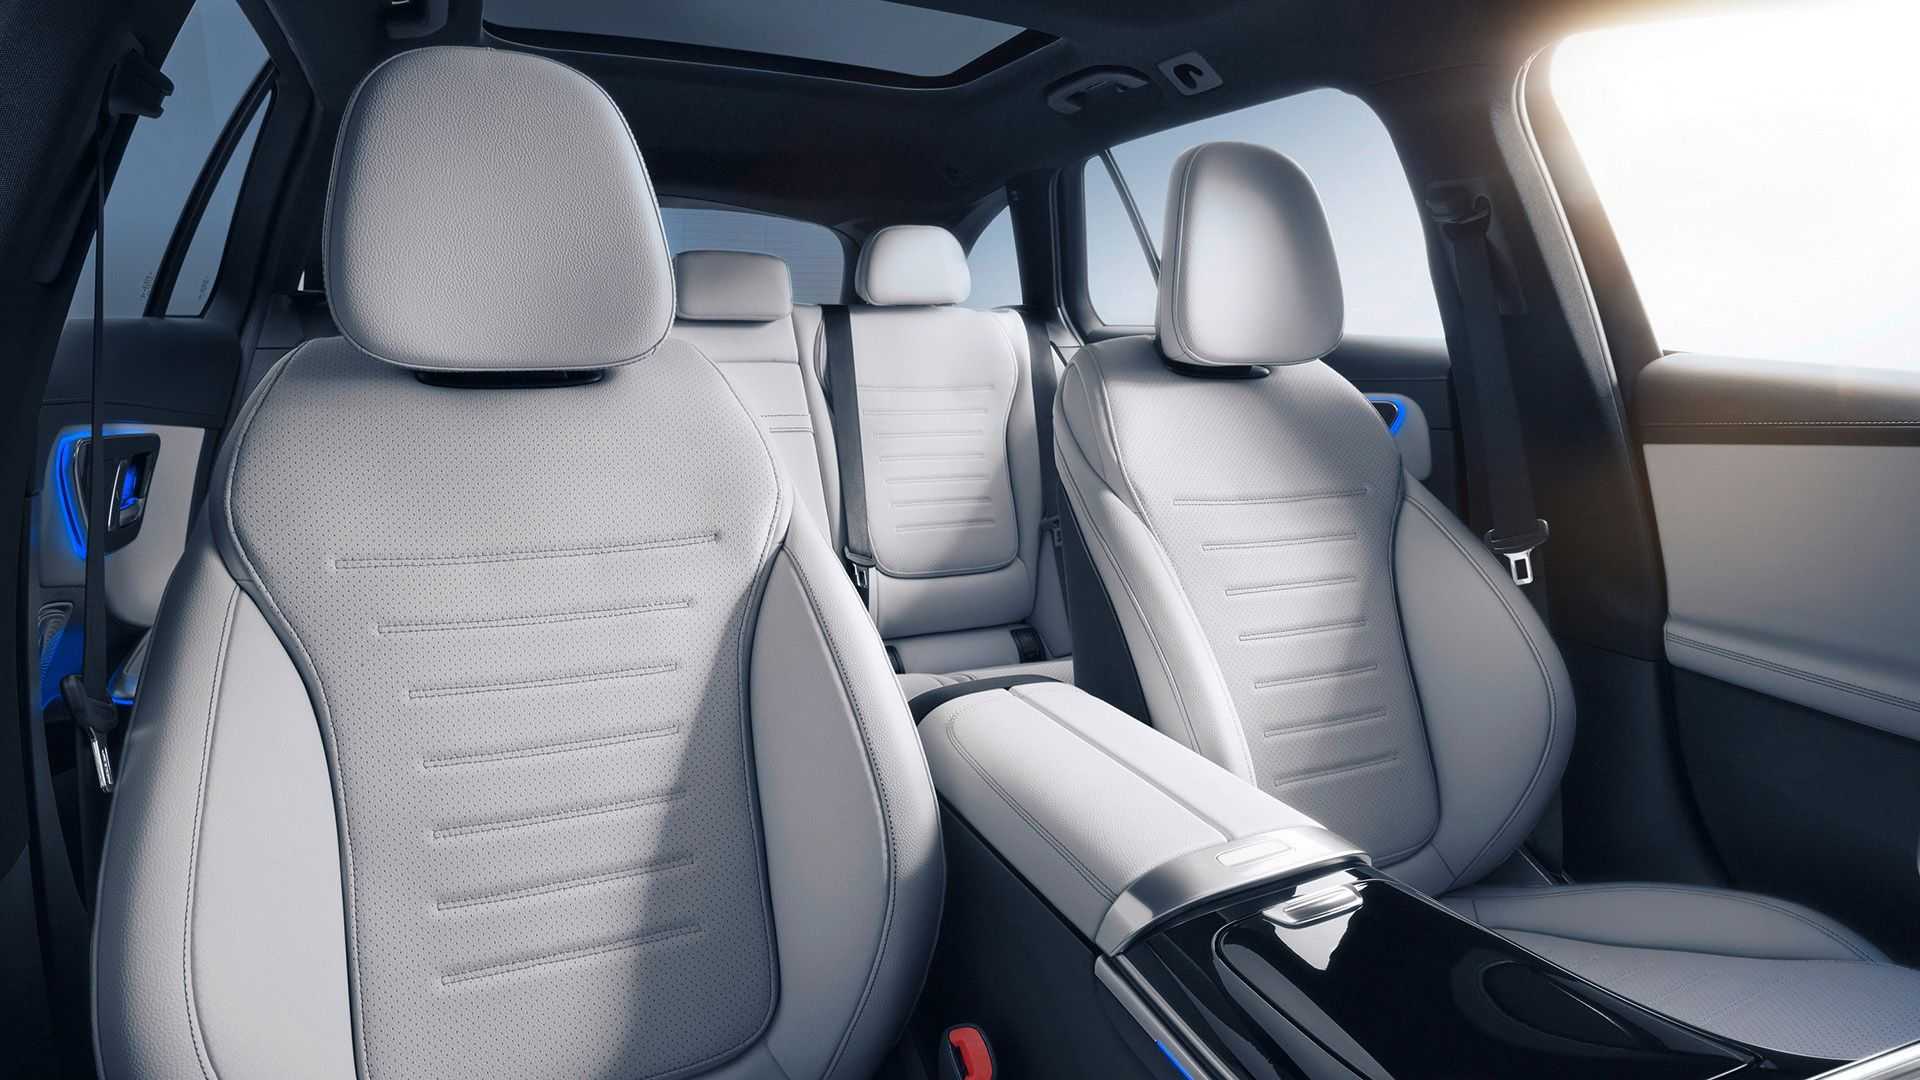 صندلی های عقب استیشن واگن مرسدس بنز سی کلاس / 2022 Mercedes C-Class آبی رنگ